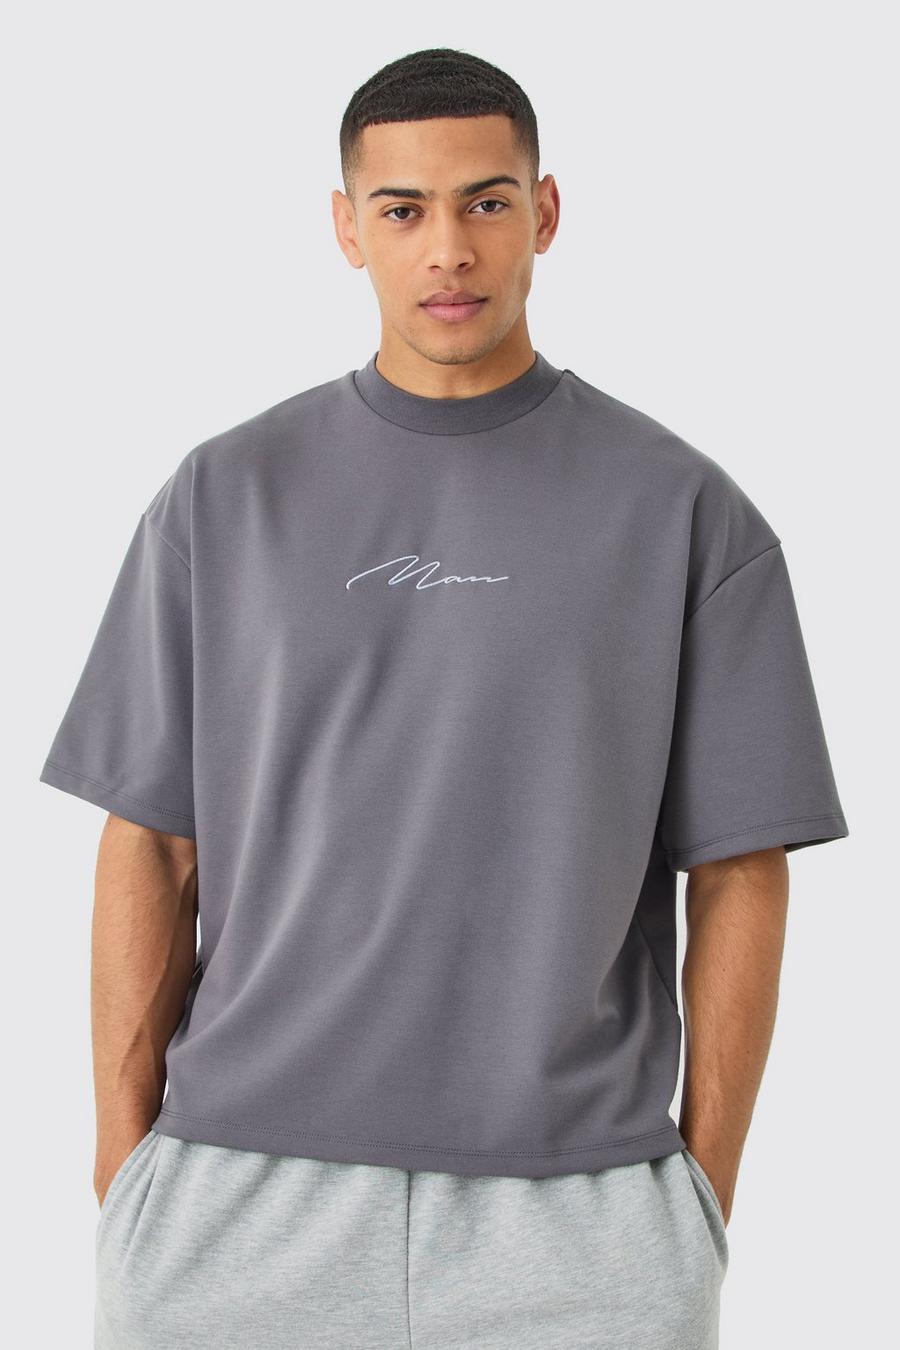 Camiseta oversize recta Premium súper gruesa bordada, Charcoal